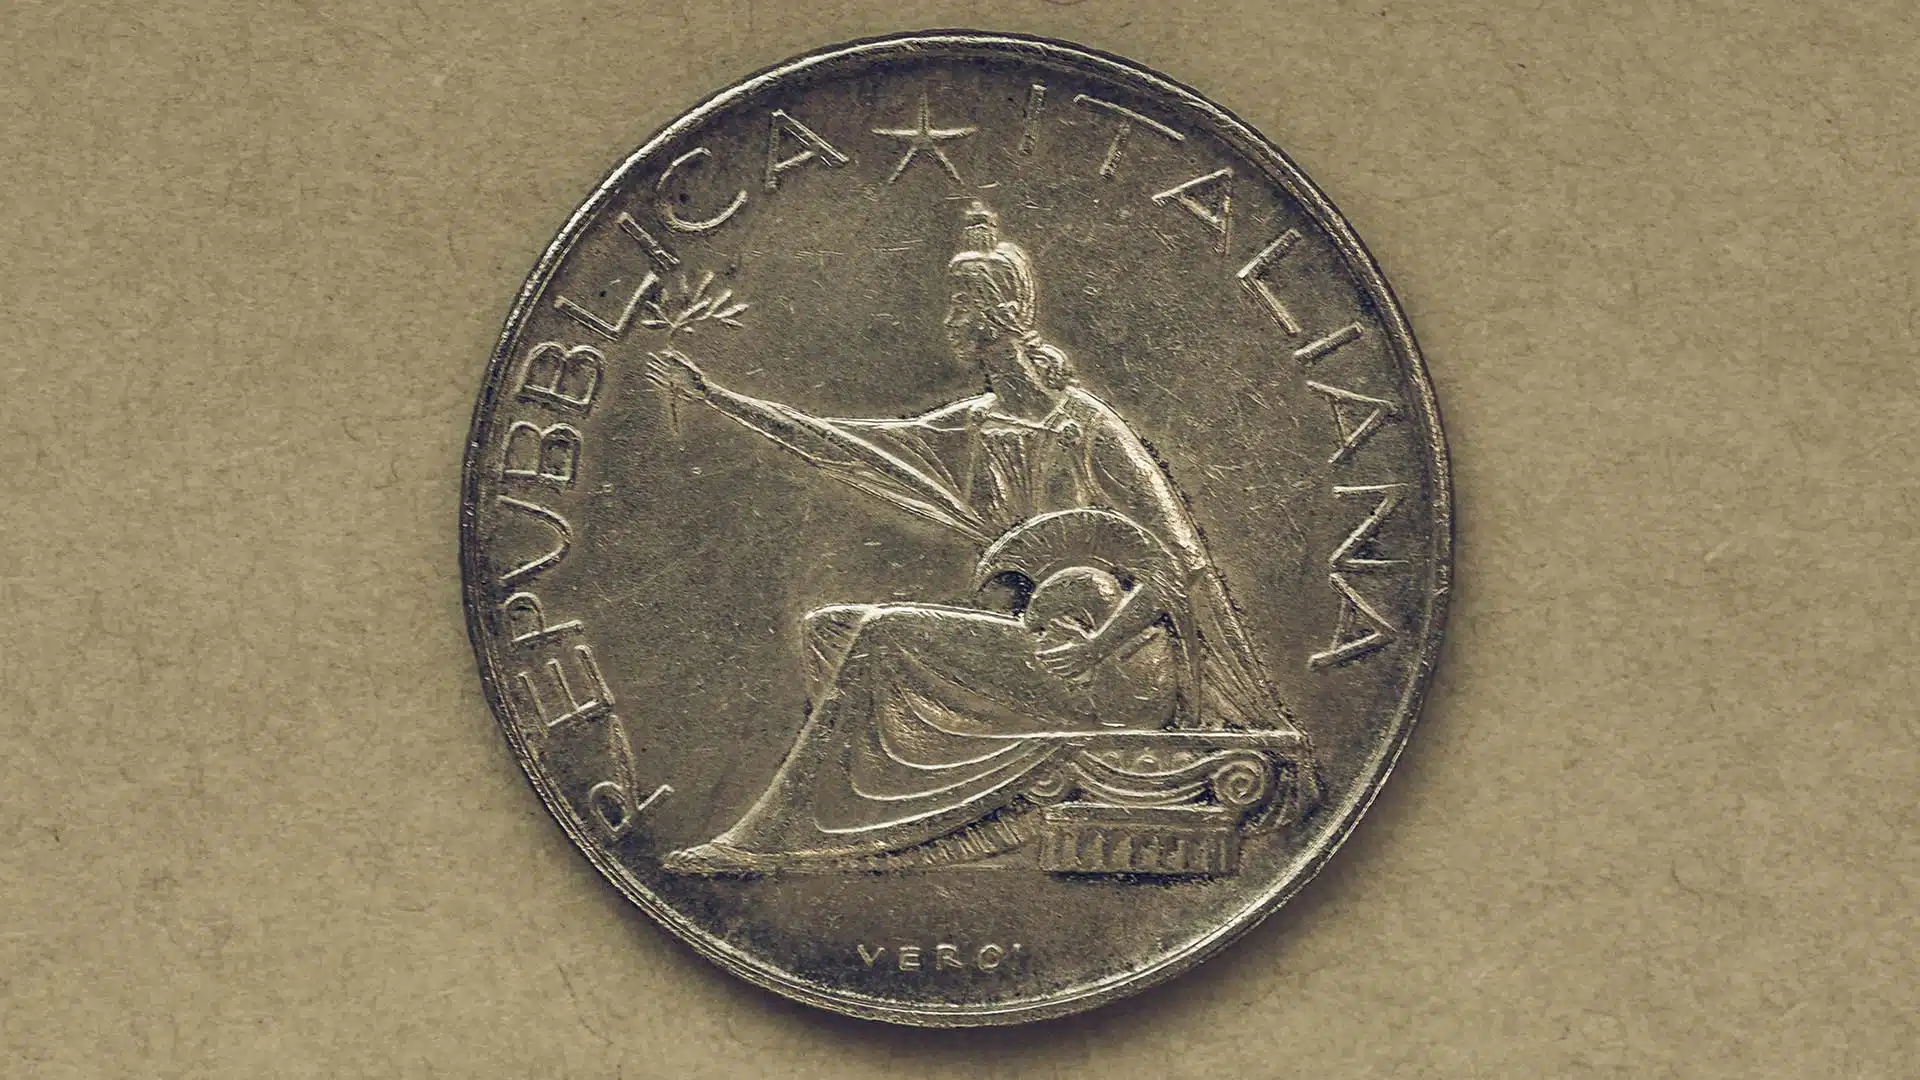 500 lire argento